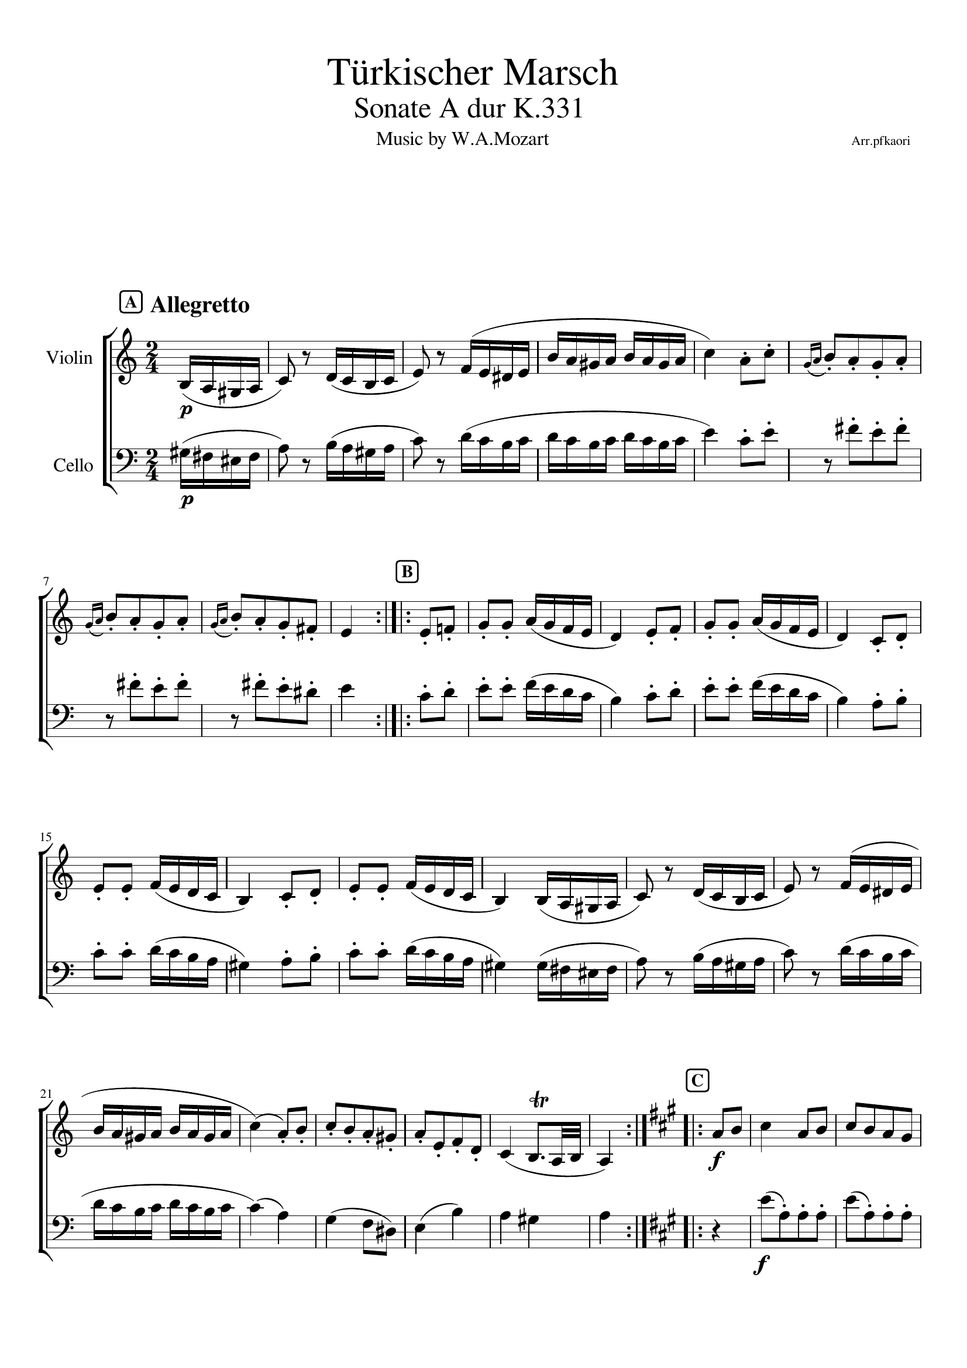 モーツァルト - トルコ行進曲 (ヴァイオリン&チェロ/無伴奏) by pfkaori